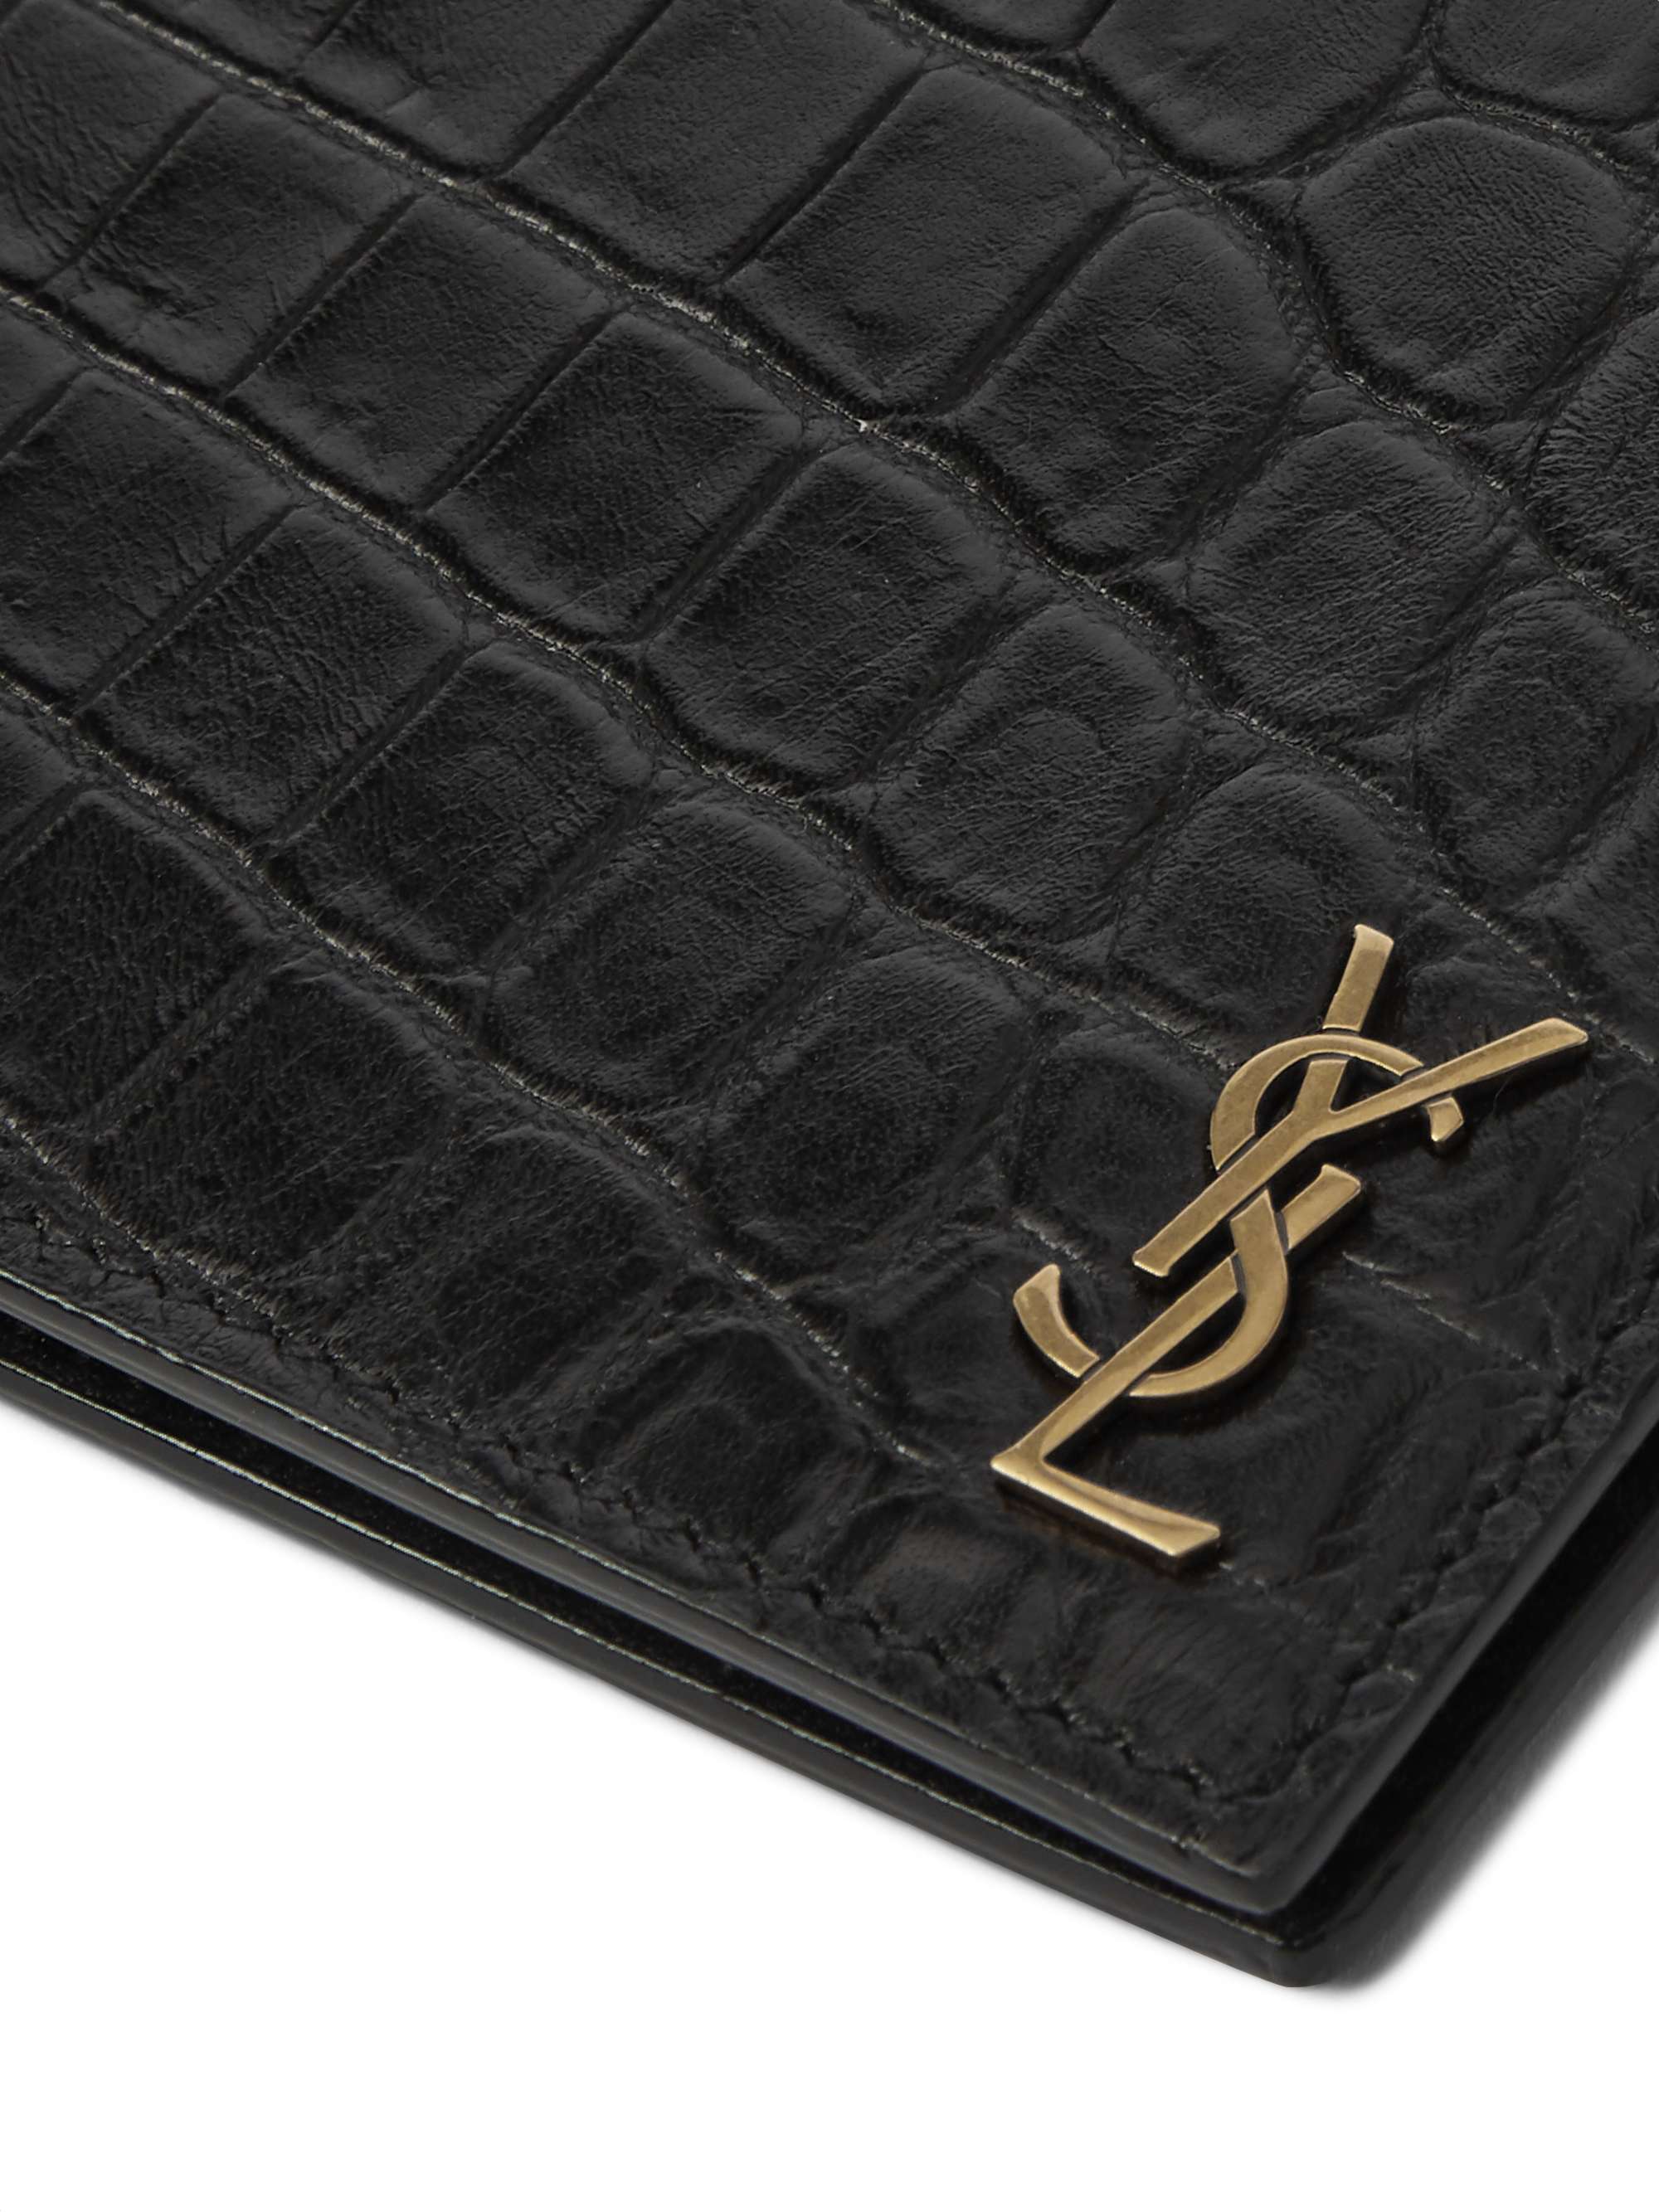 SAINT LAURENT Logo-Appliquéd Leather Wallet with Money Clip